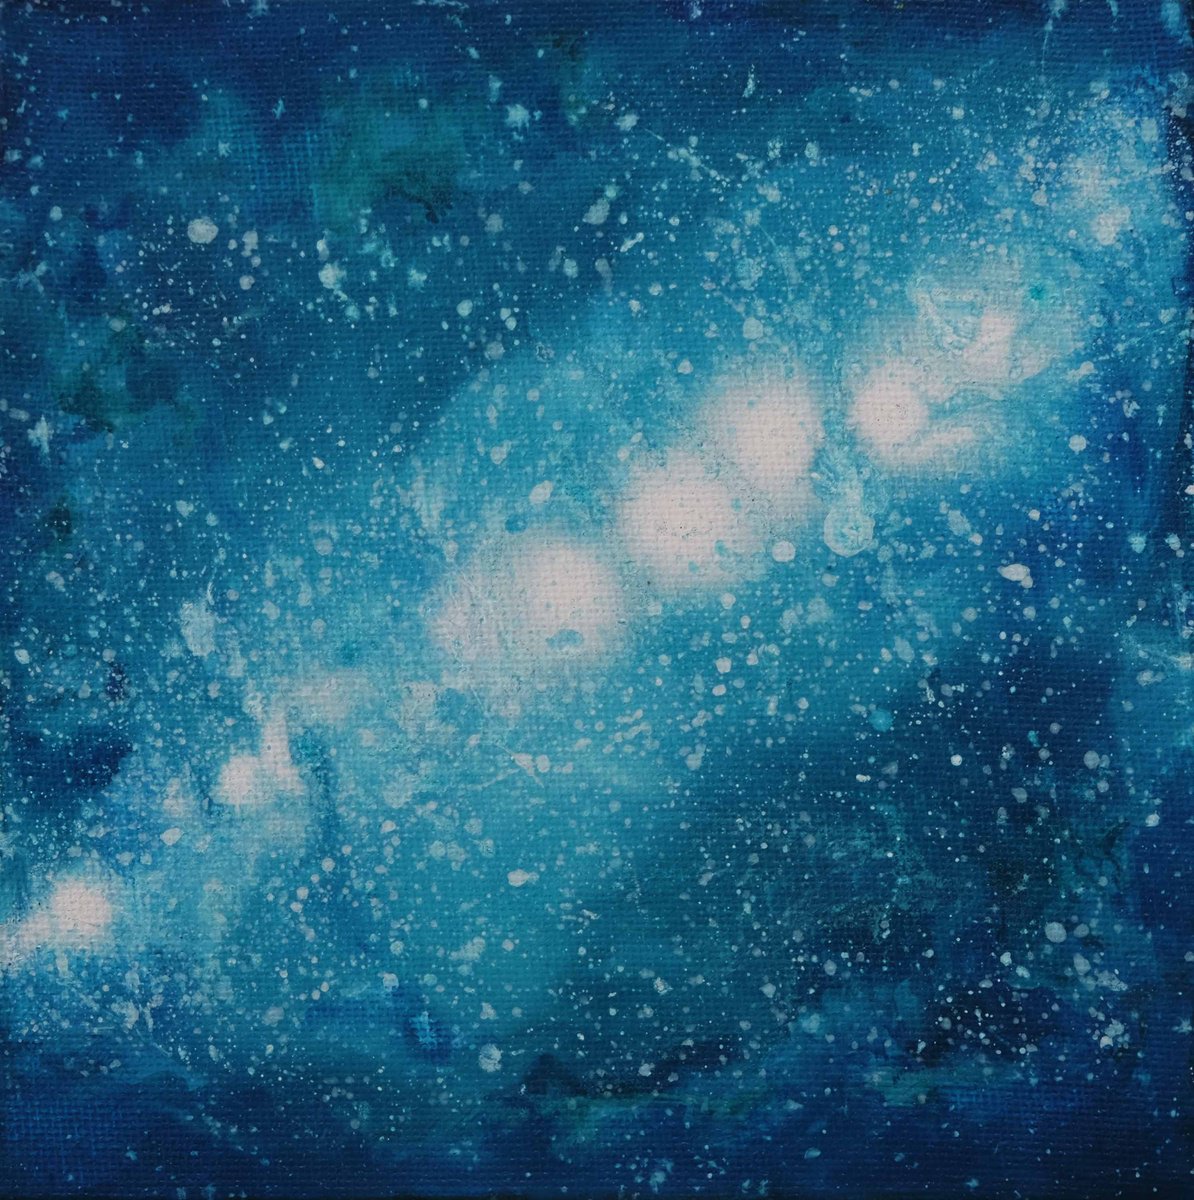 Cosmos. Space. by Anastasia Woron